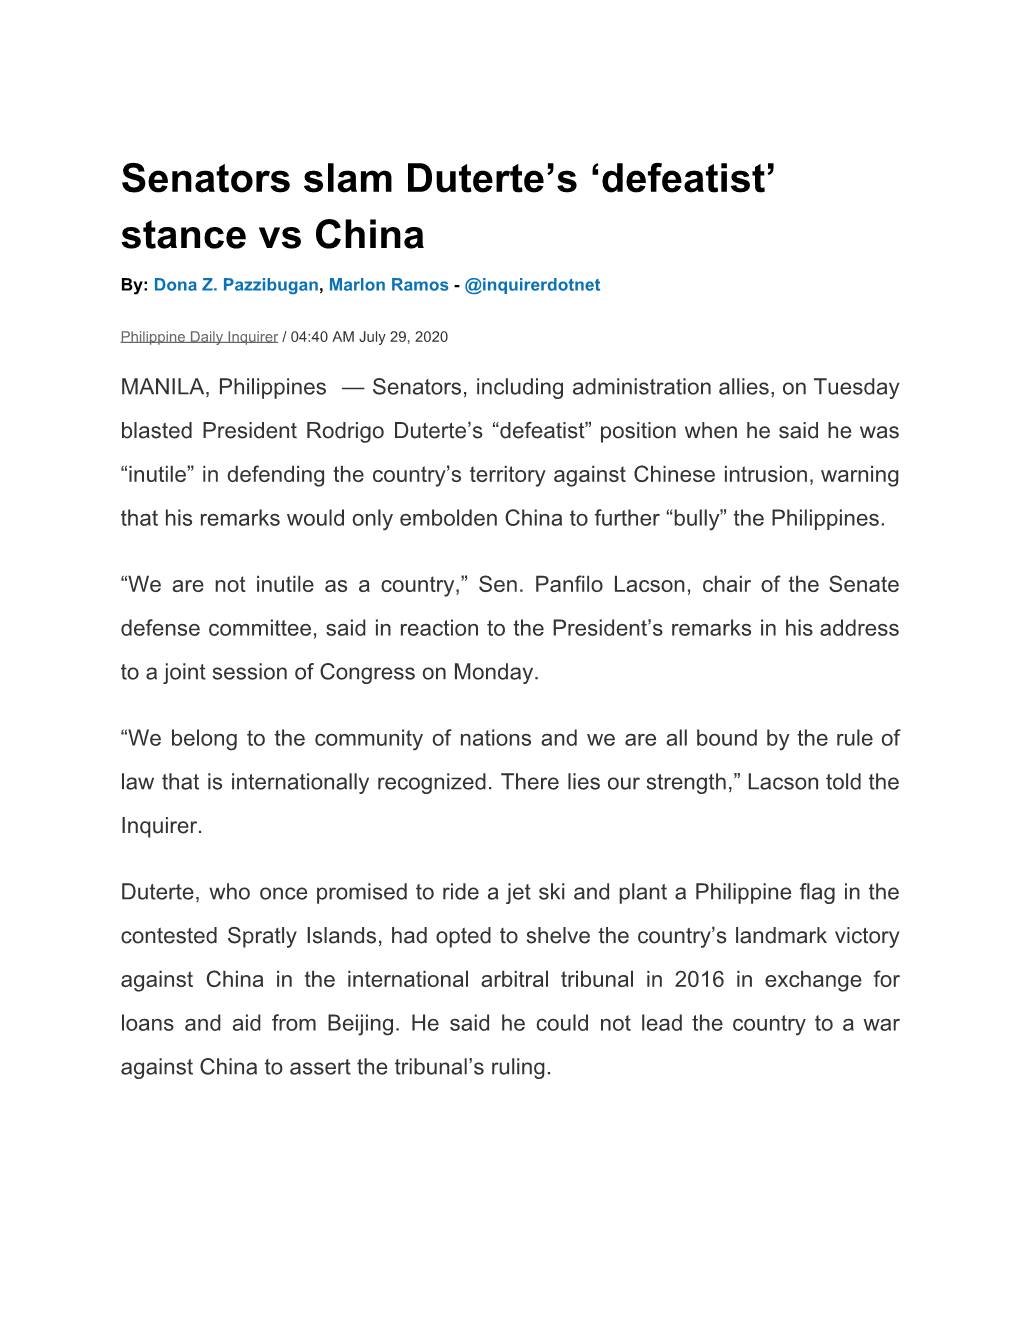 Senators Slam Duterte's 'Defeatist' Stance Vs China